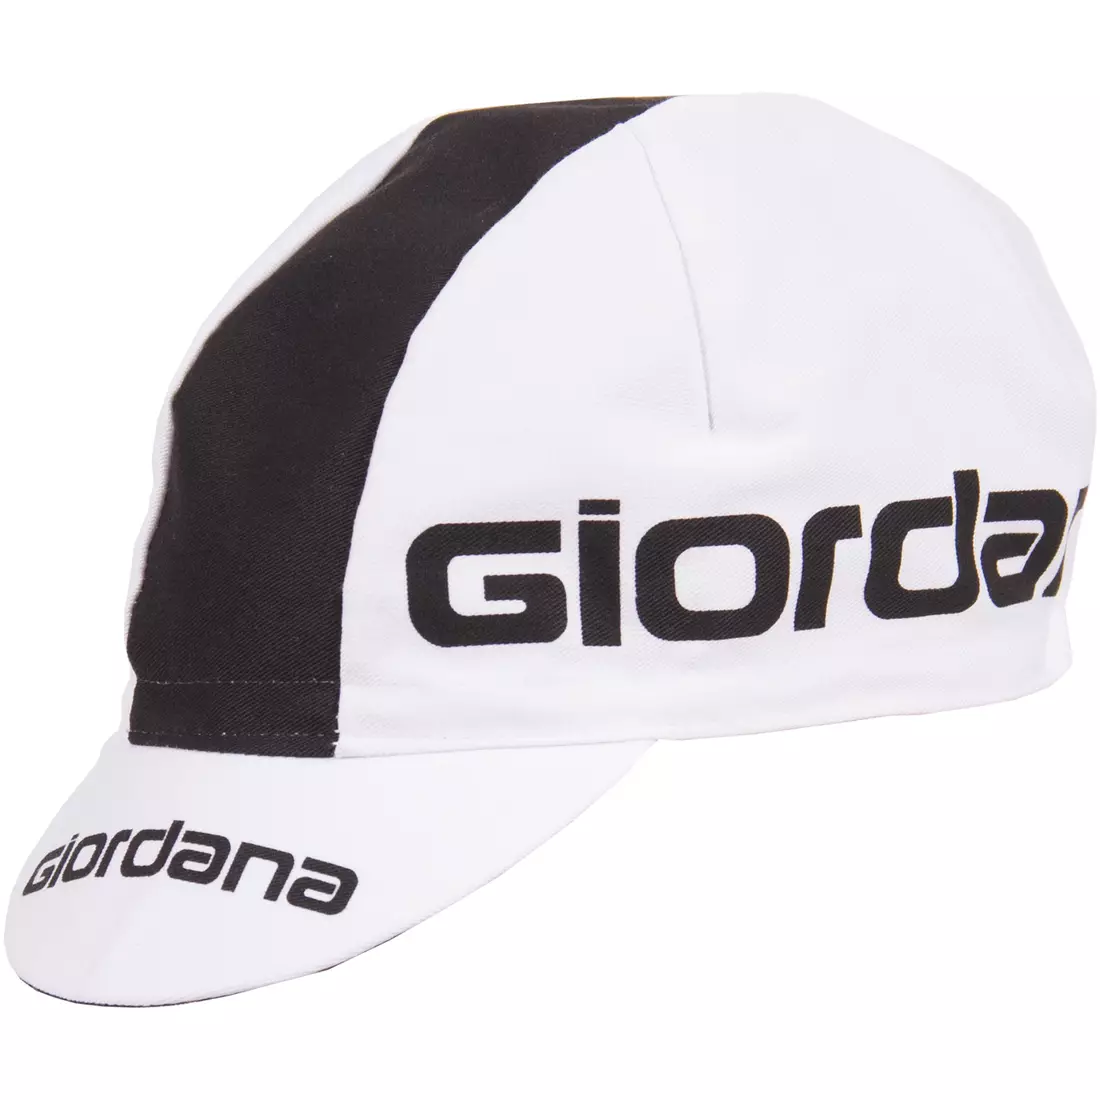 Cyklistická čepice GIORDANA SS18 - Logo Giordana - Bílá/Černá GI-S5-COCA-GIOR-WTBK jedna velikost